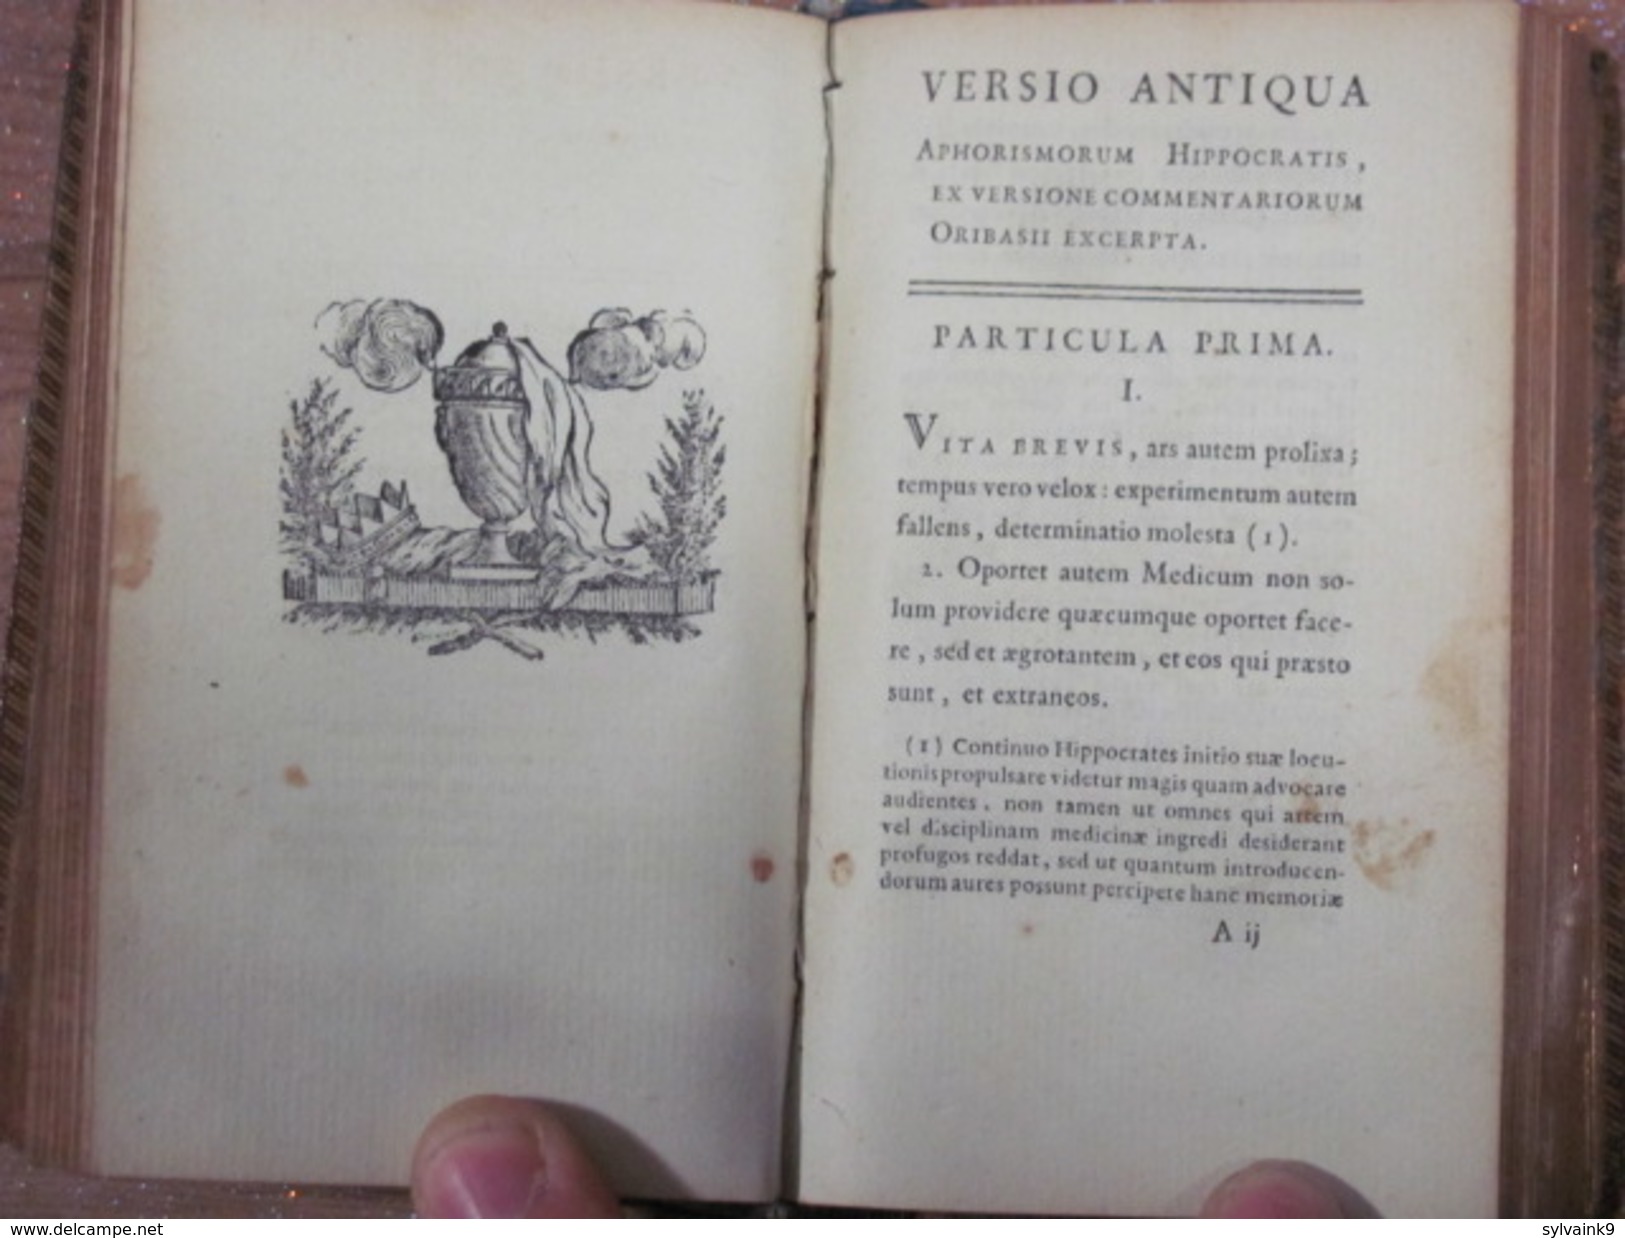 1784 Aphorismi et praenotionum liber + Notae et emendationes in Hippocratis aphorismos Aphorismes d Hippocrate medecine